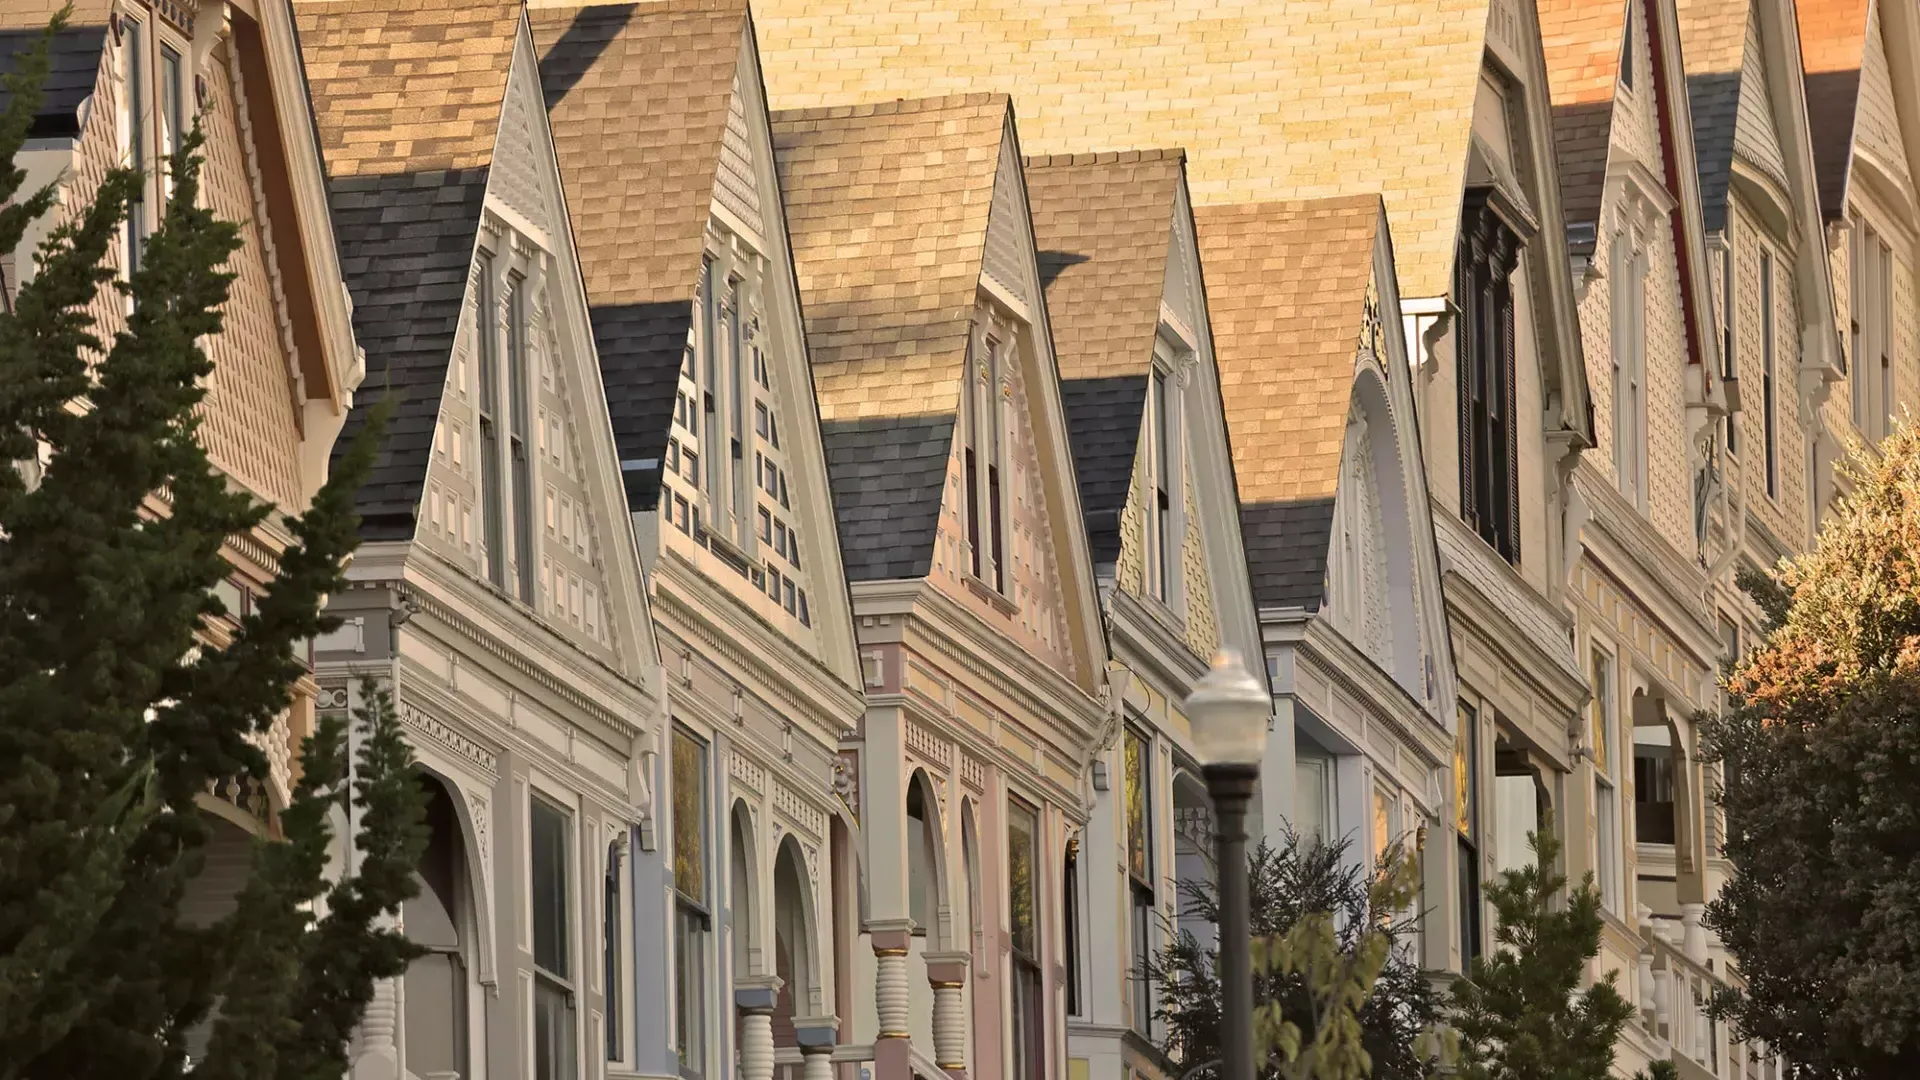 贝博体彩app卡斯特罗区(Castro District of San Francisco)一排维多利亚式房屋的前视图.